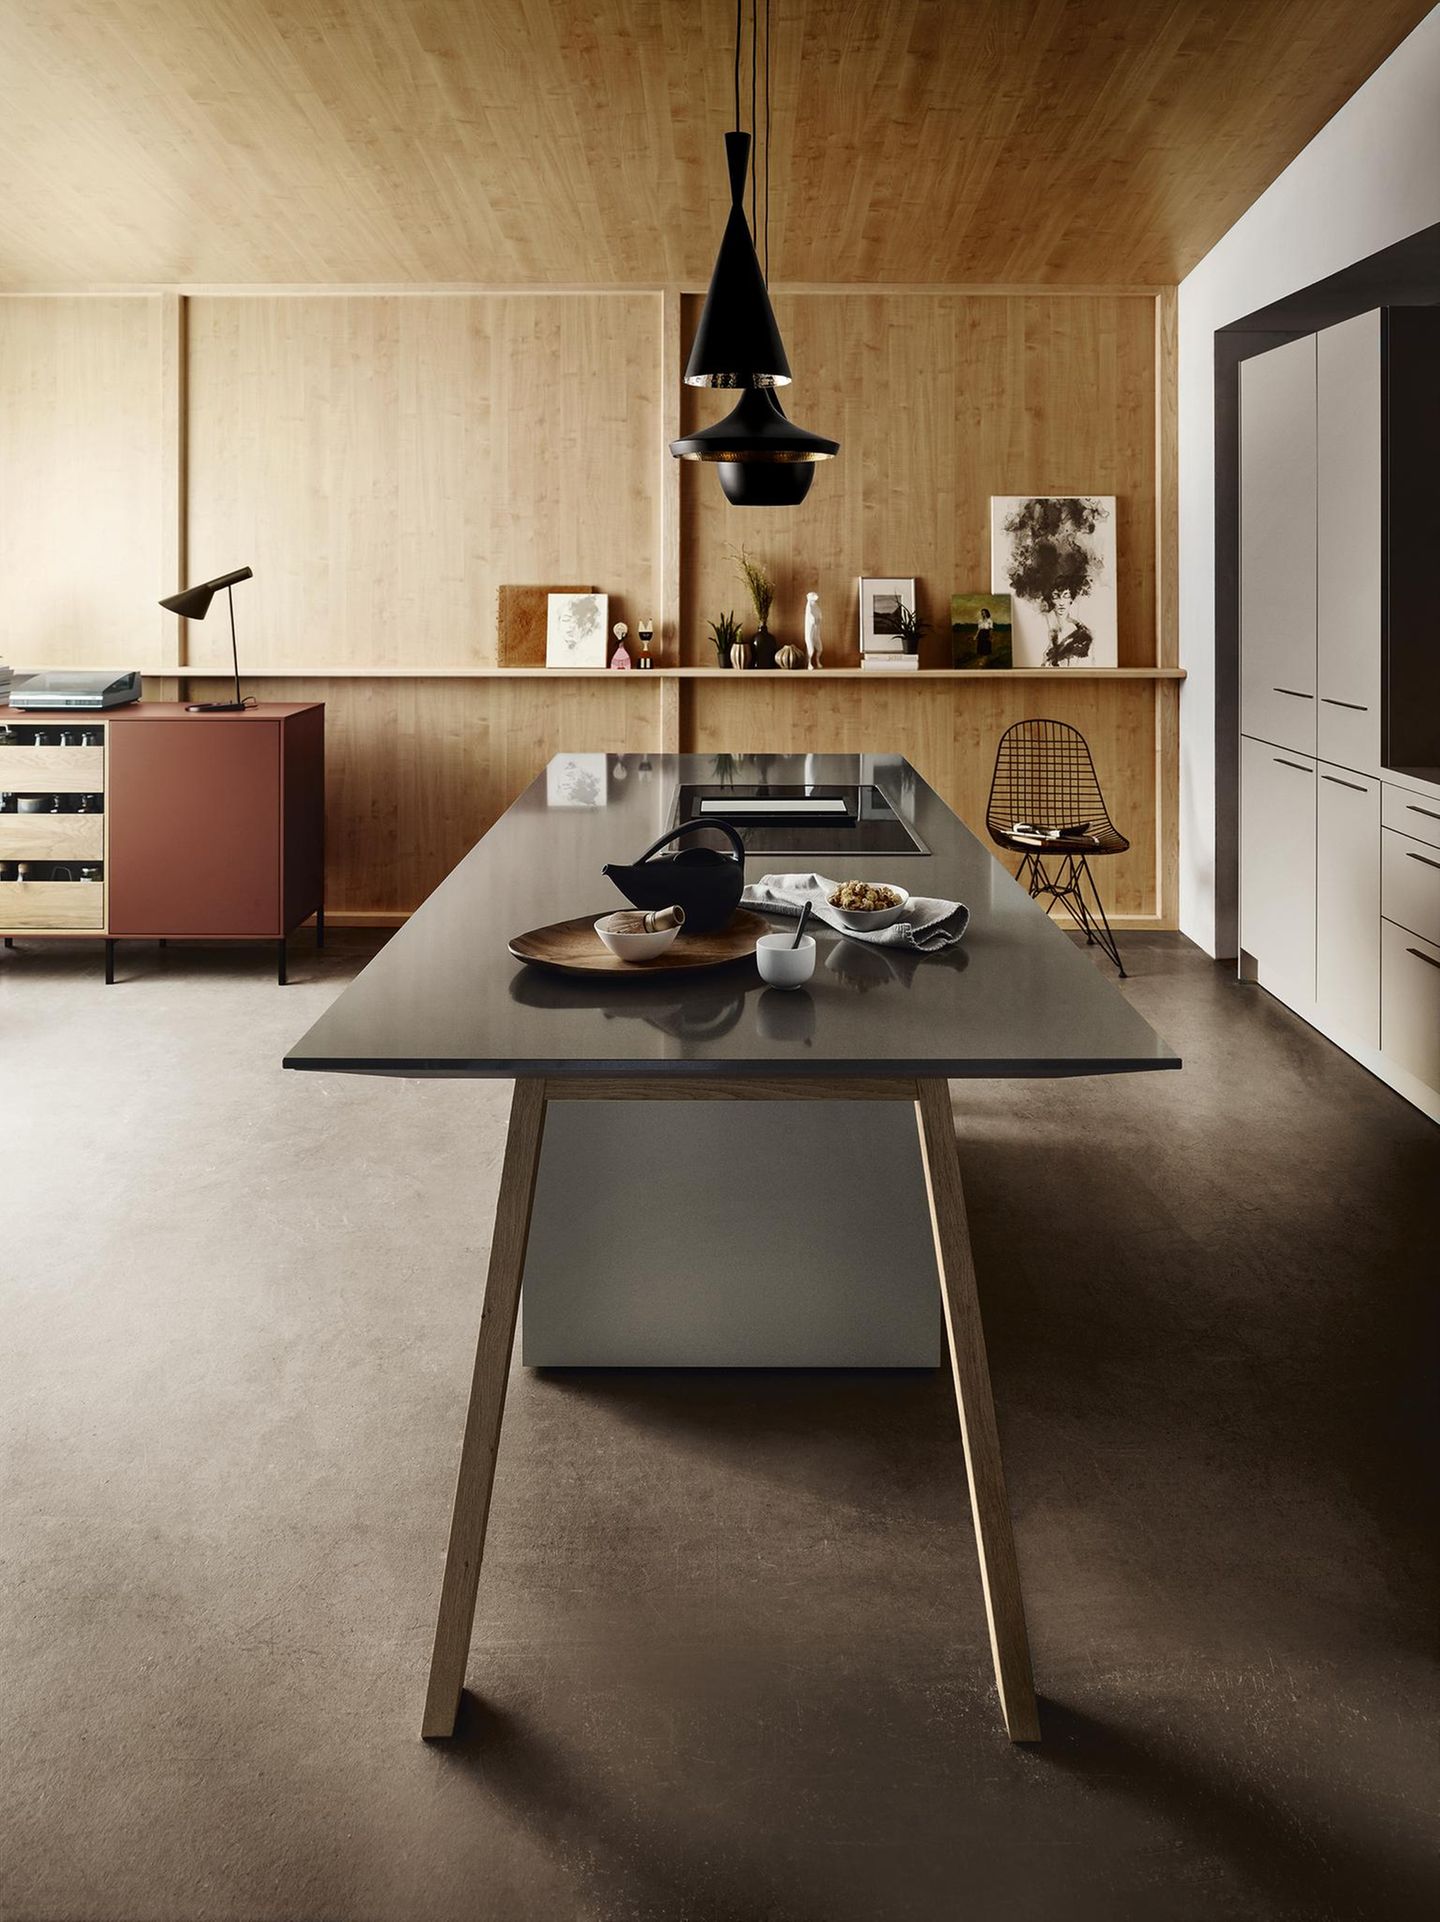 Kochtisch von next125 in einer Wohnküche mit Holzverkleidung